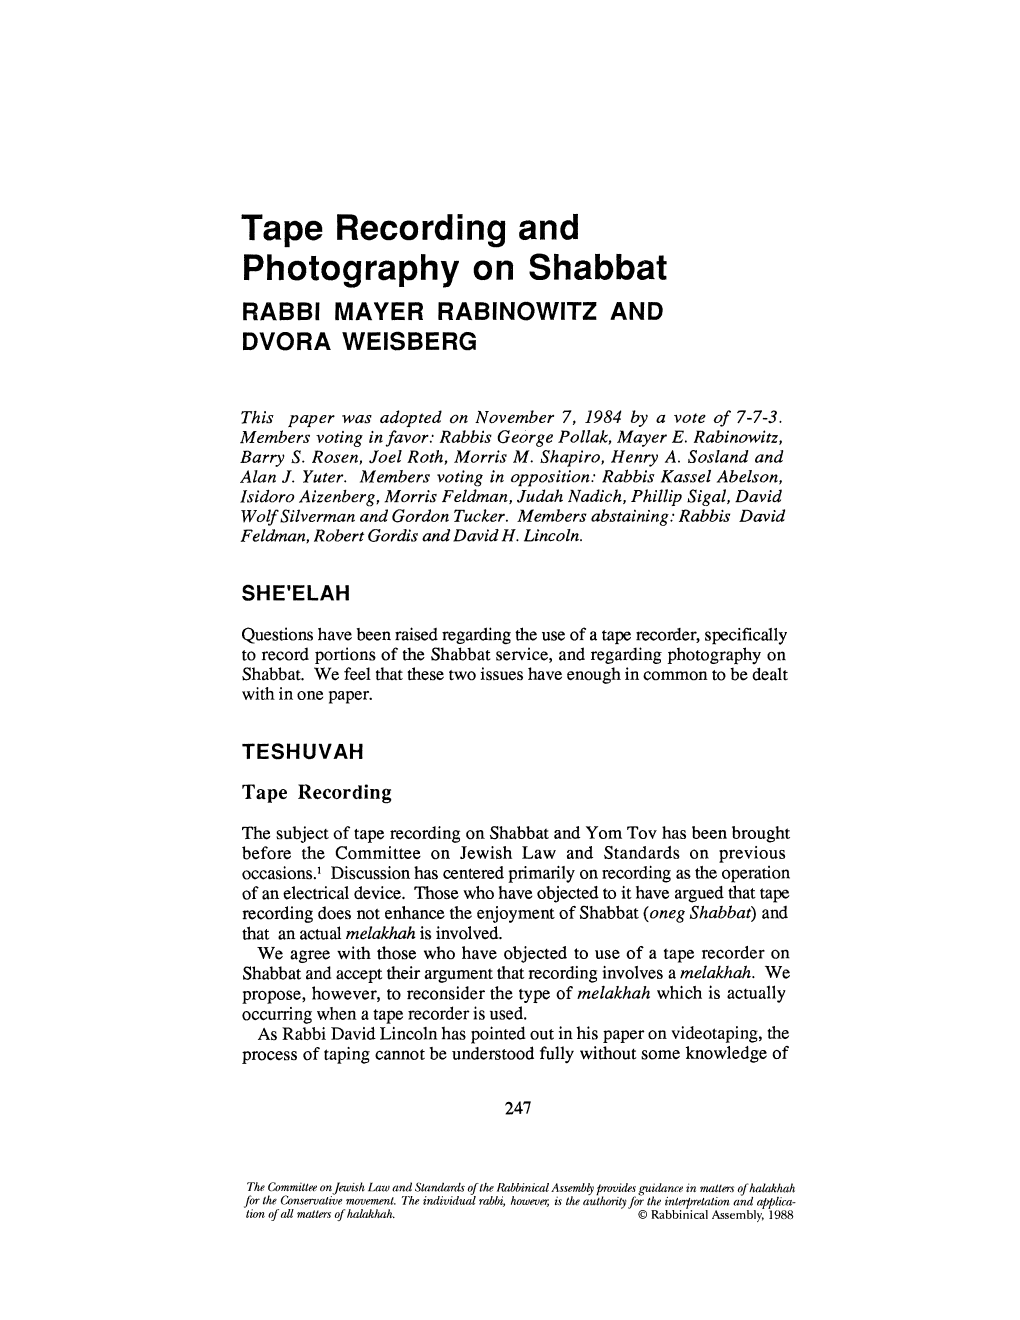 Tape Recording and Photography on Shabbat RABBI MAYER RABINOWITZ and DVORA WEISBERG